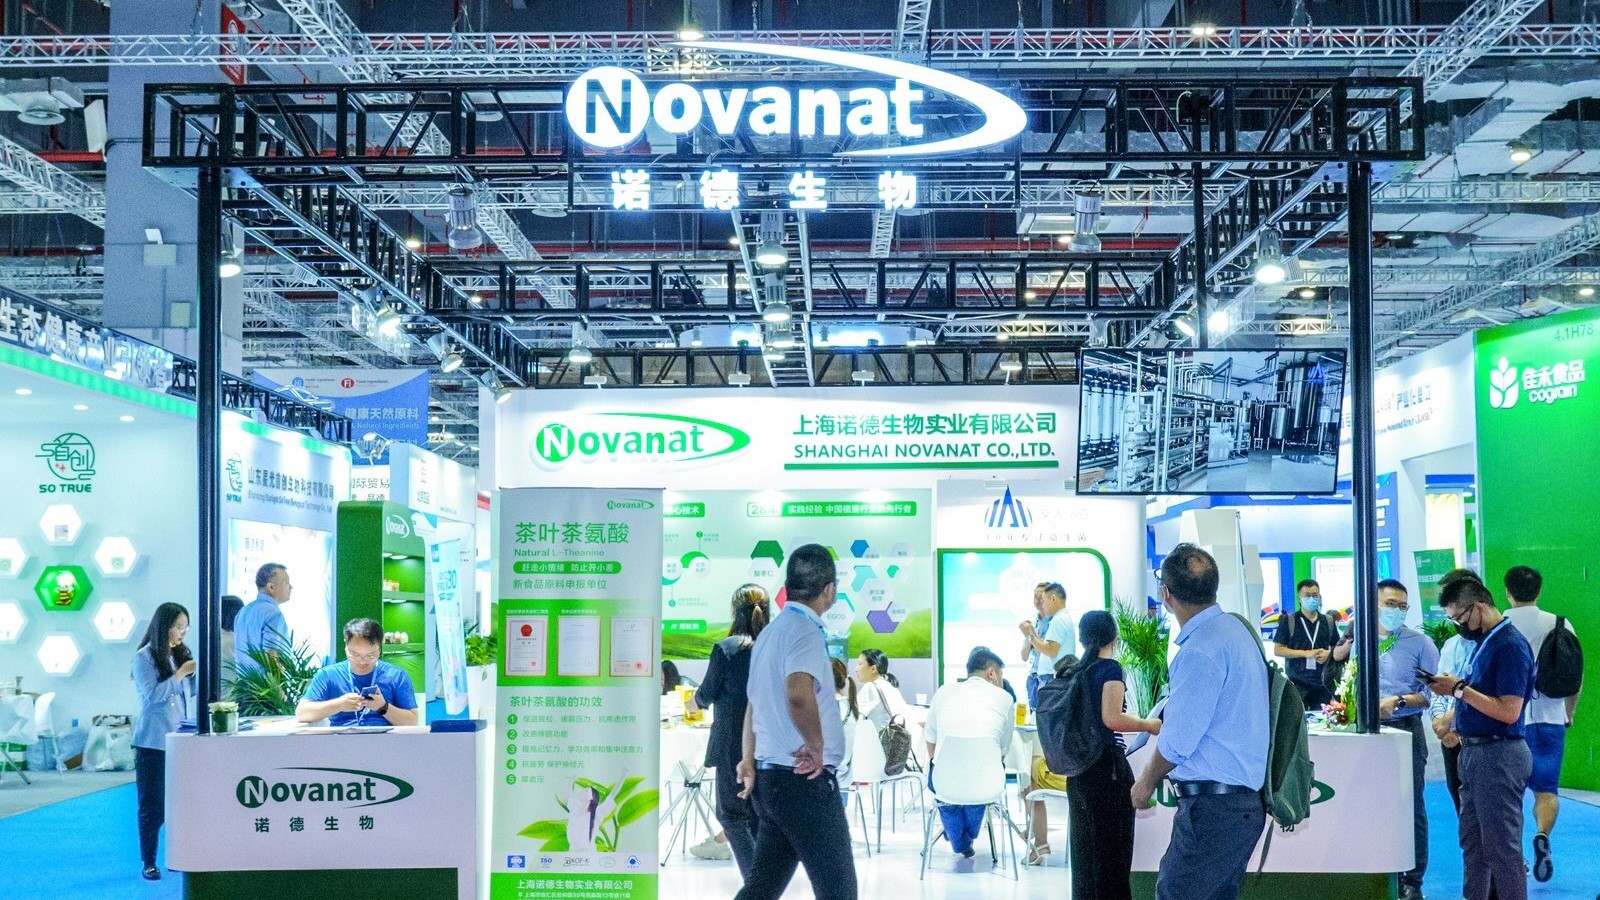 Shanghai Novanat Co.,Ltd